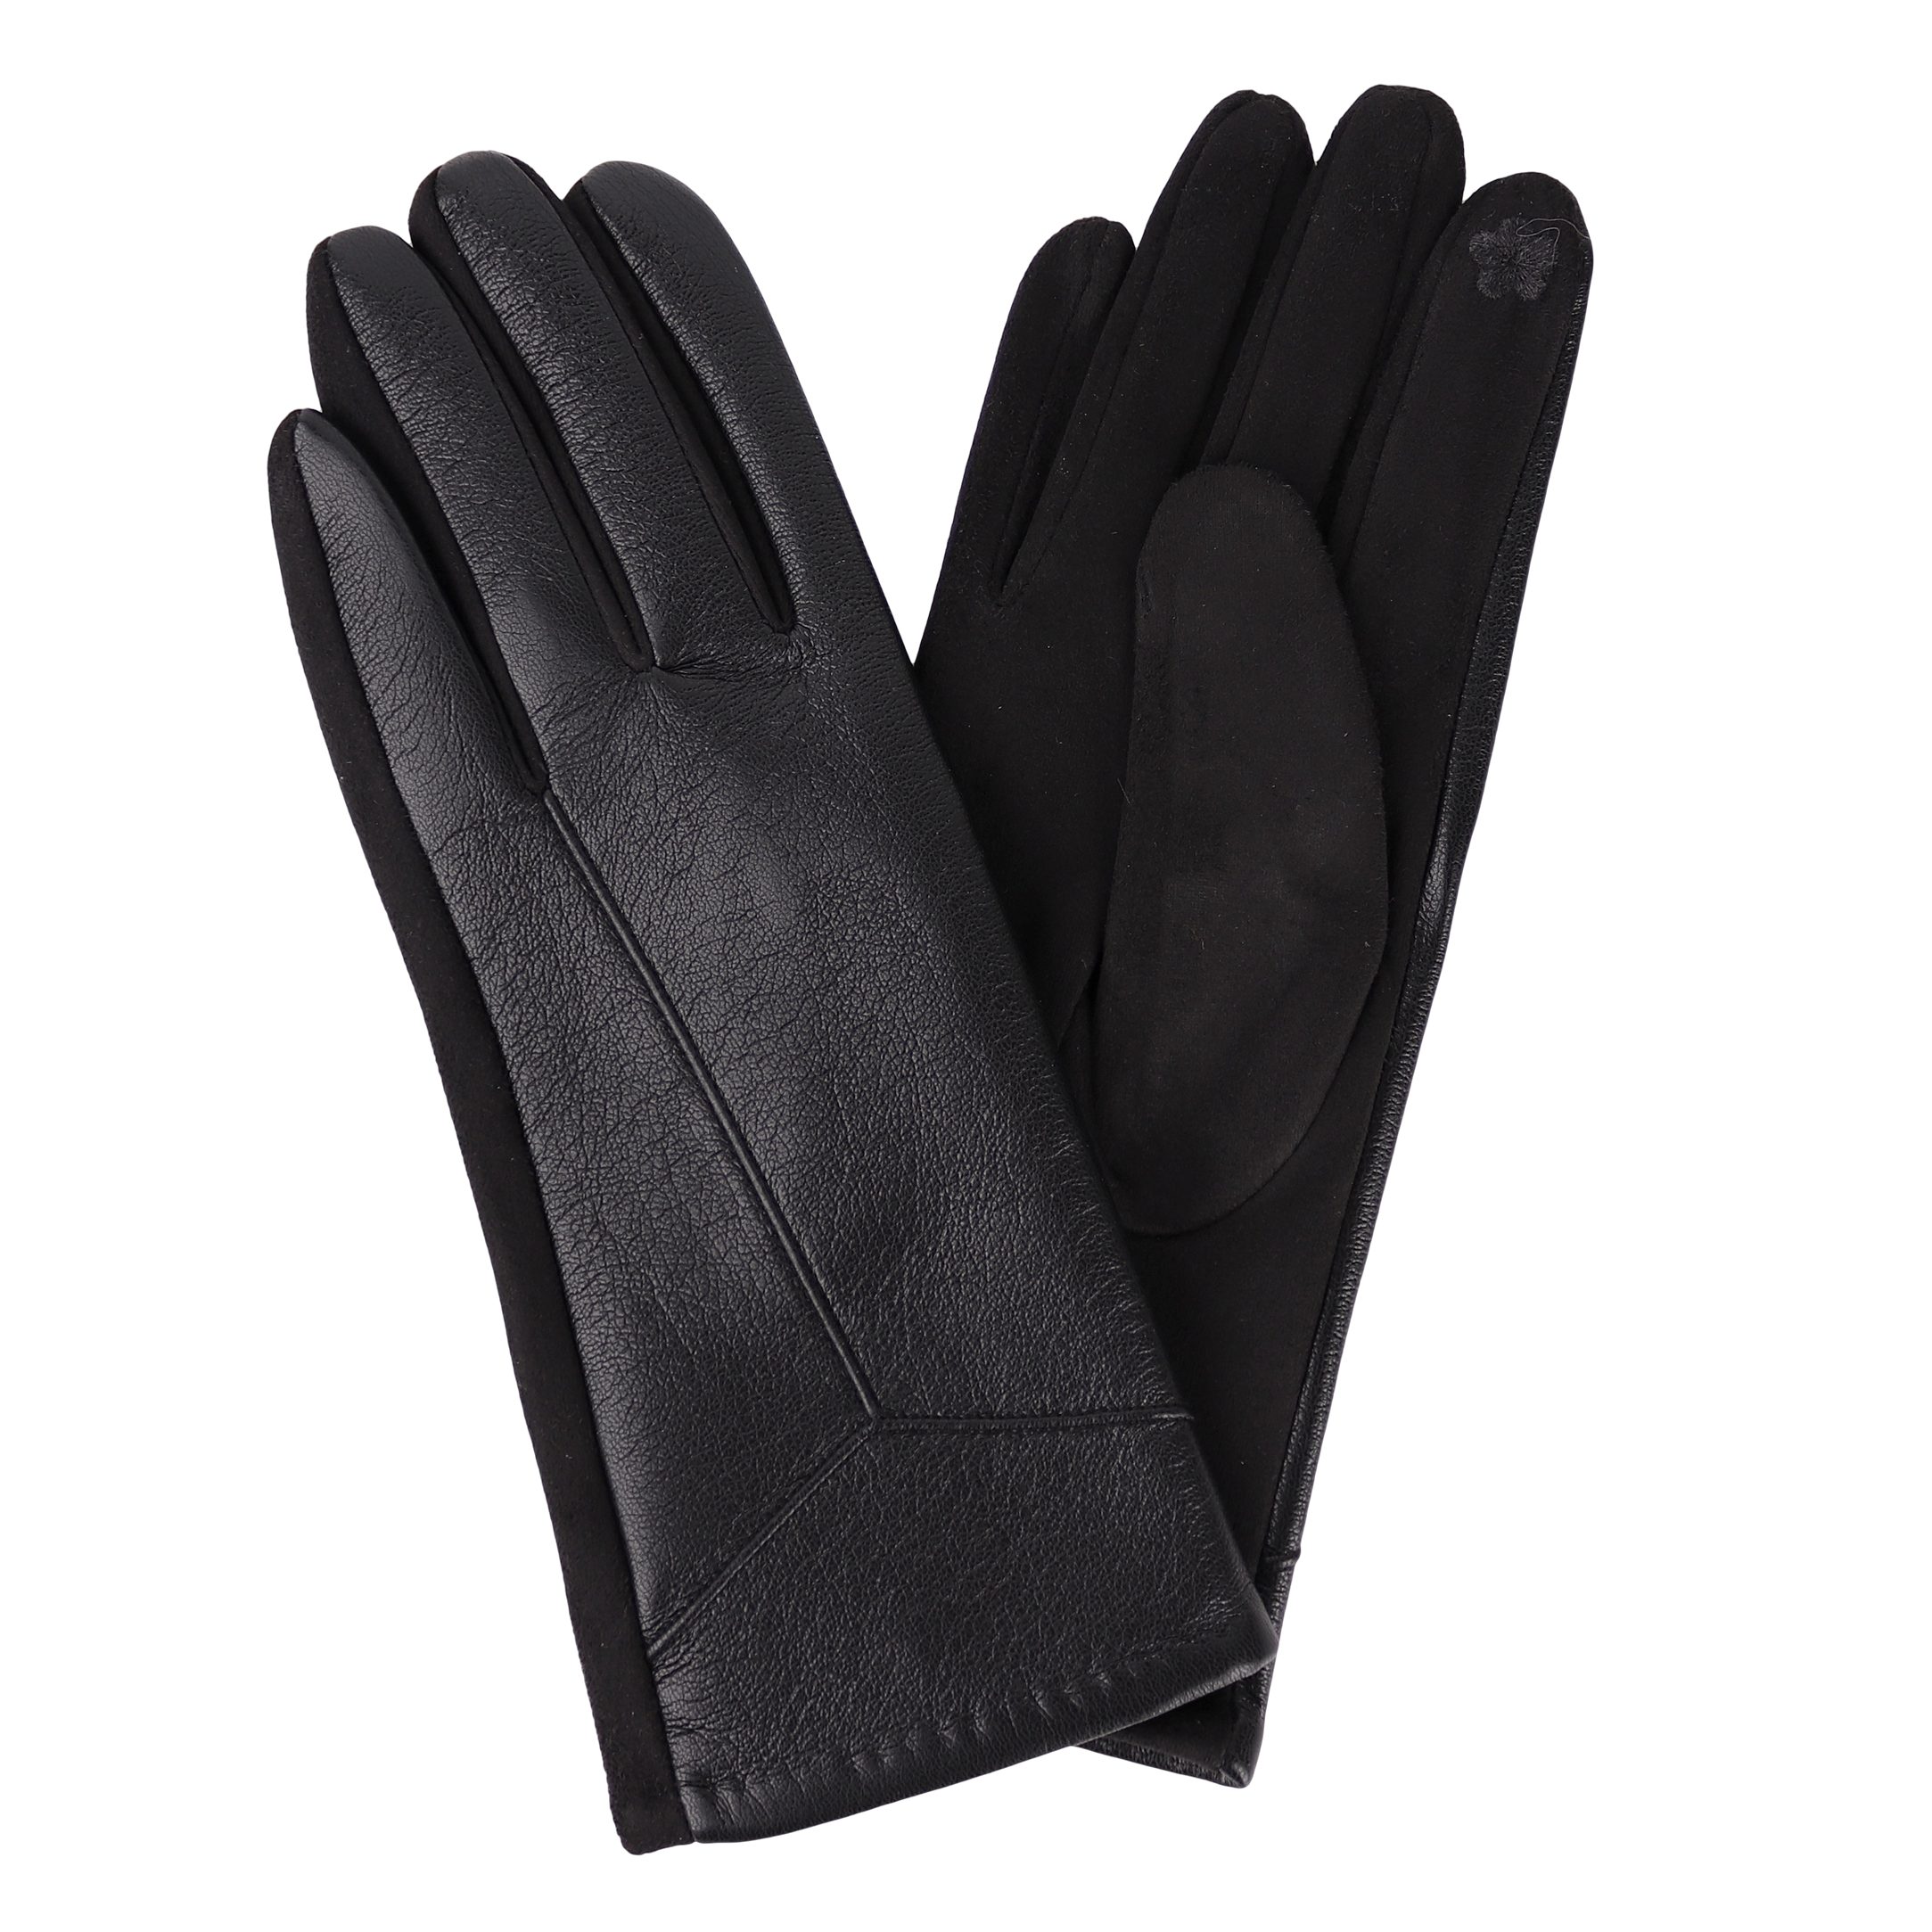 MIRROSI Lederhandschuhe Damen Touchscreen Handschuhe gefüttert Warm ONESIZE aus Veganleder sehr weich und warm ideal für Herbst oder Winter Schwarz